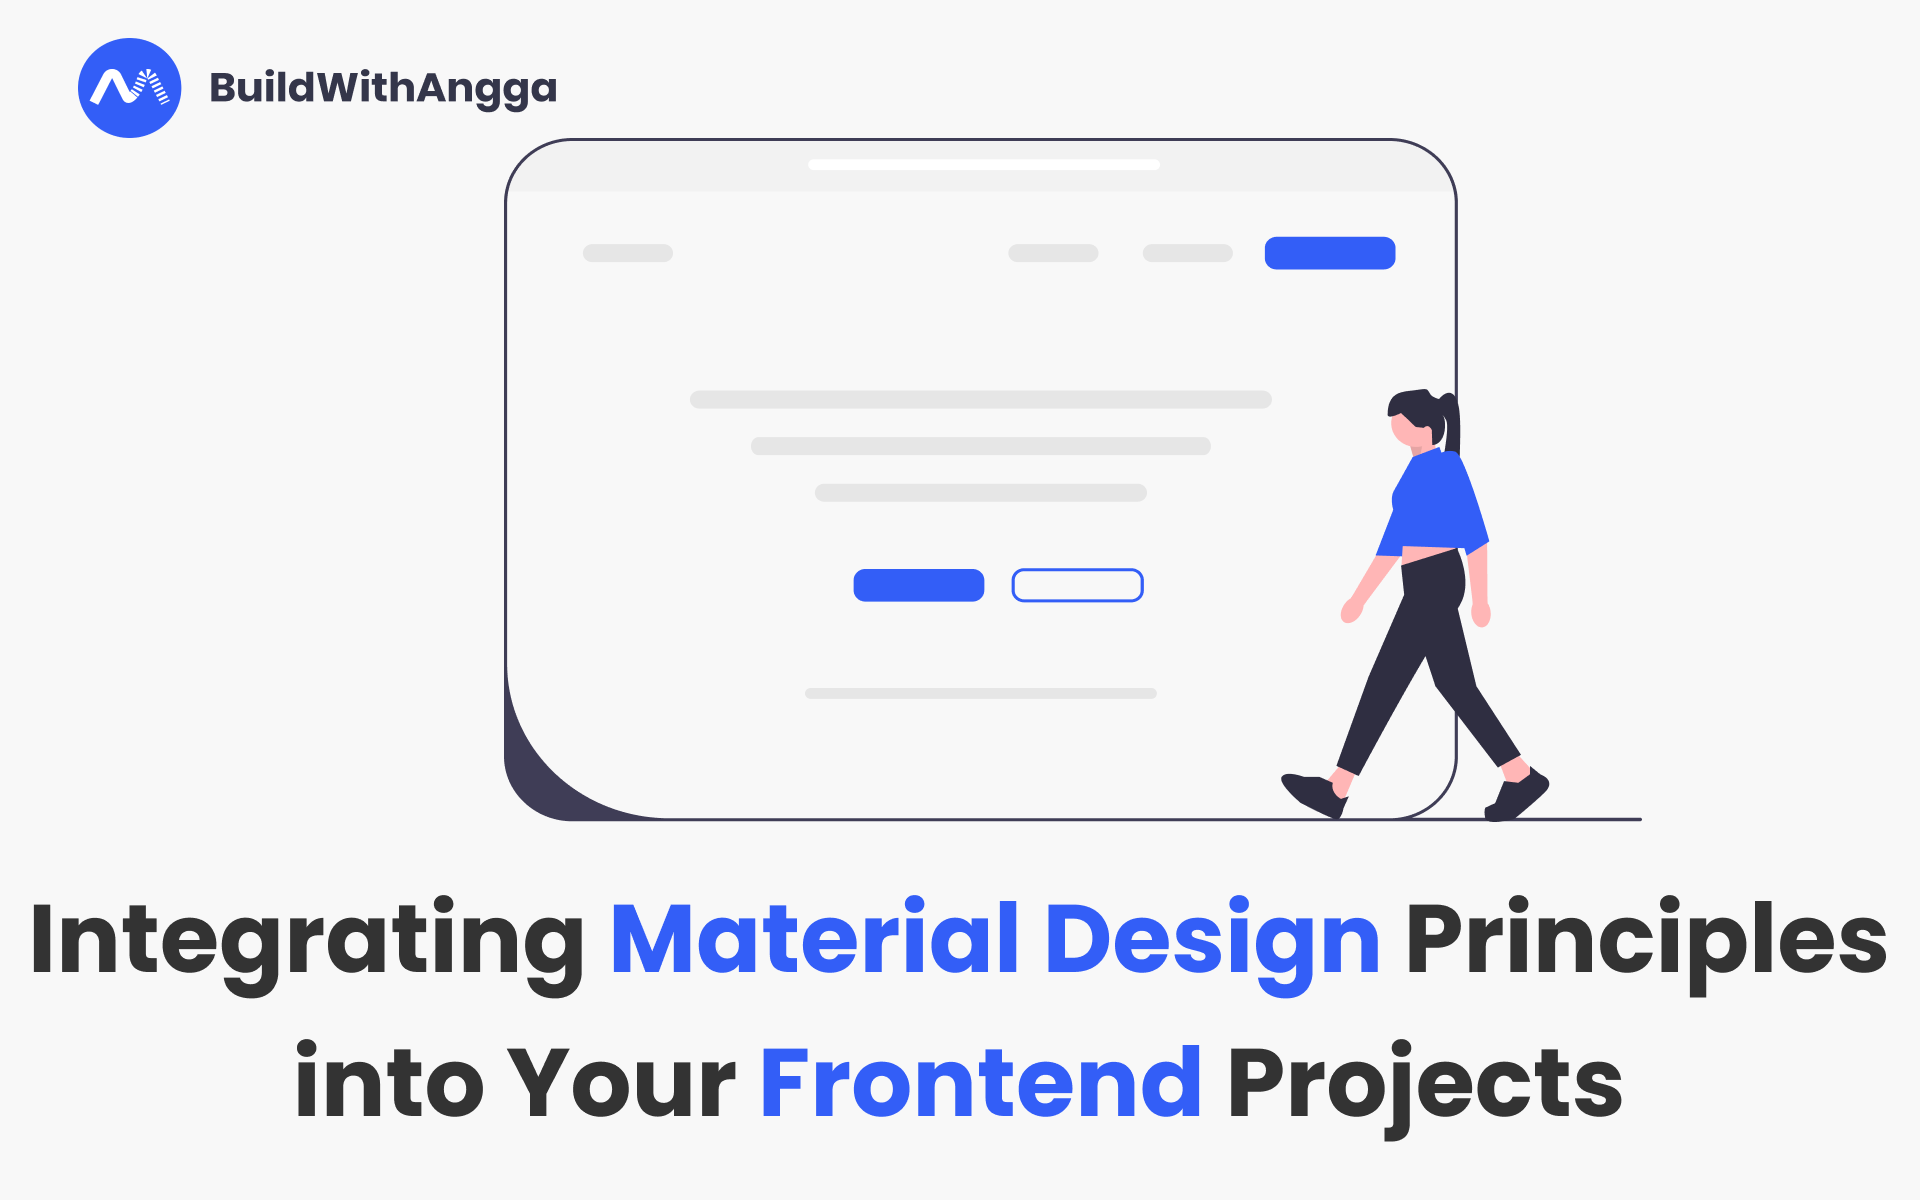 Kelas Menggabungkan Prinsip Desain Material dalam Proyek Frontend Kamu di BuildWithAngga